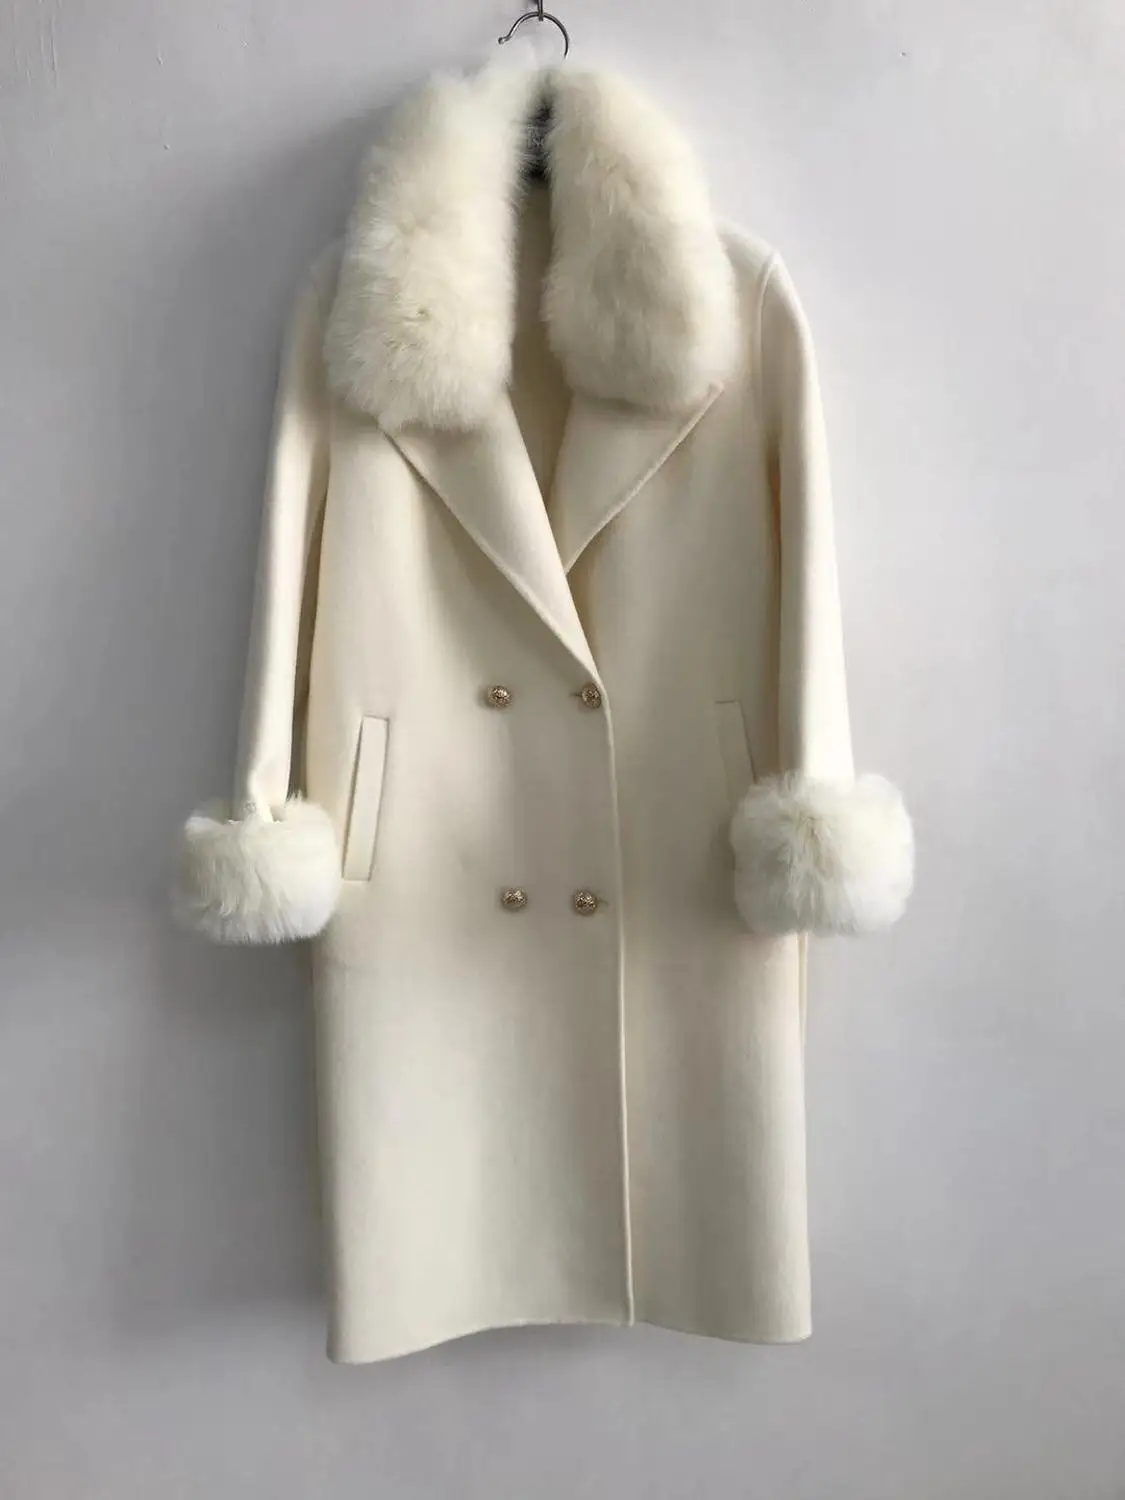 QIUCHEN PJ19100 Новое поступление Высококачественная кашемировая Женская куртка с воротником из натурального Лисьего меха и манжетами модная модель - Цвет: white